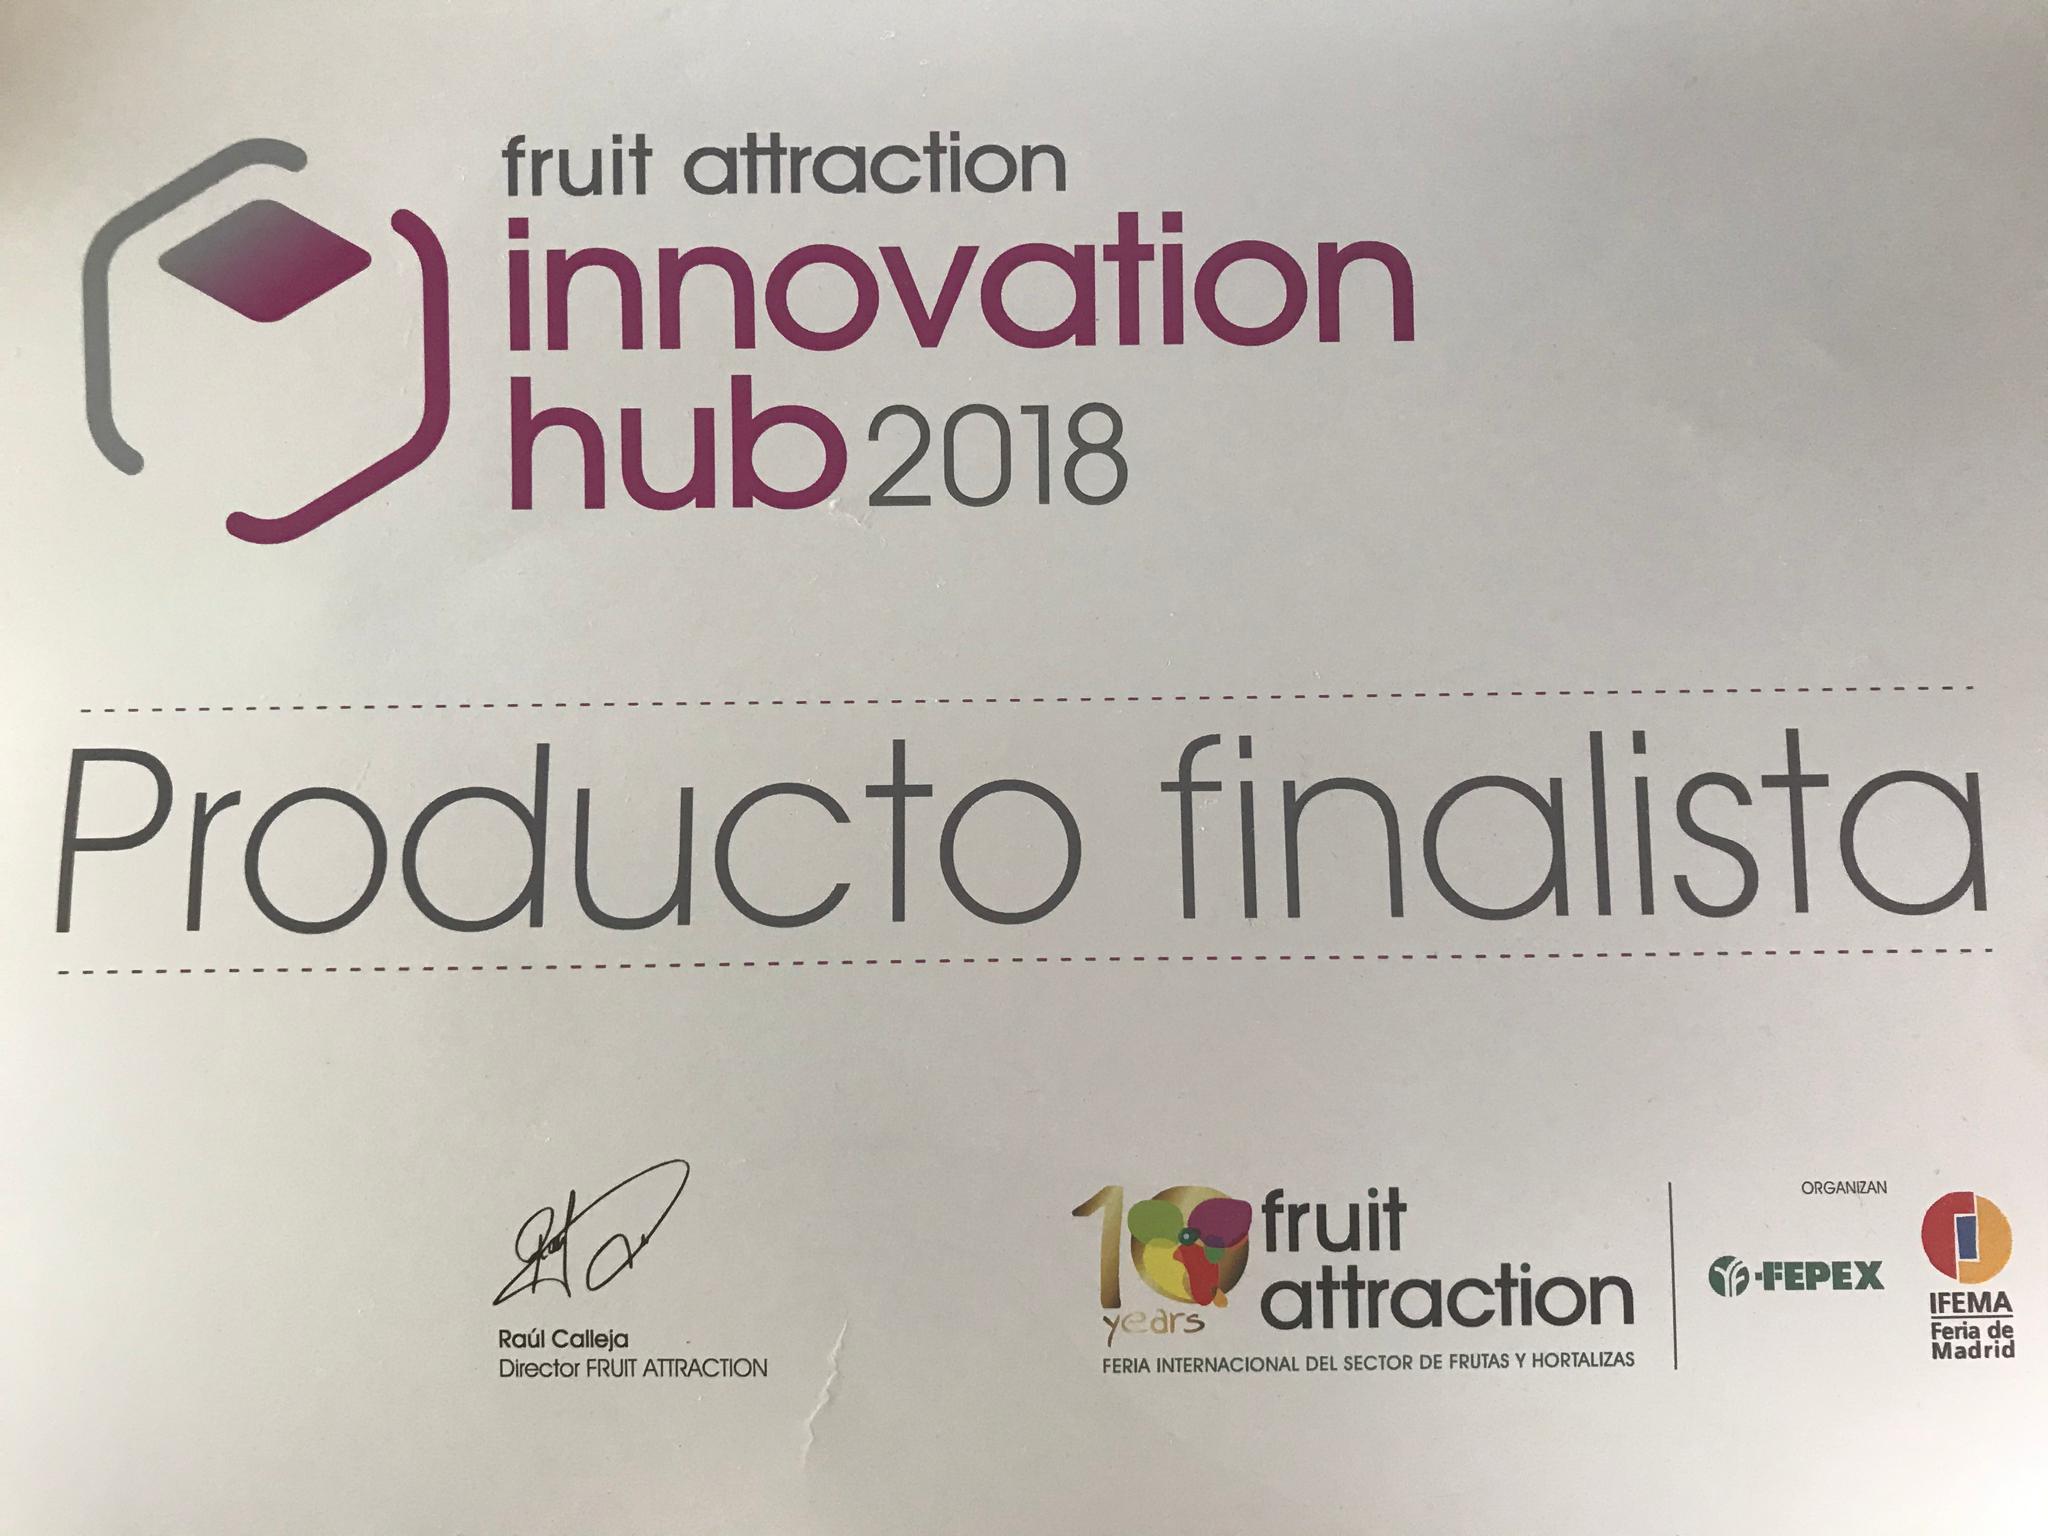 FuturCrop, producto finalista Innovation hub2018 en Fruit Attraction